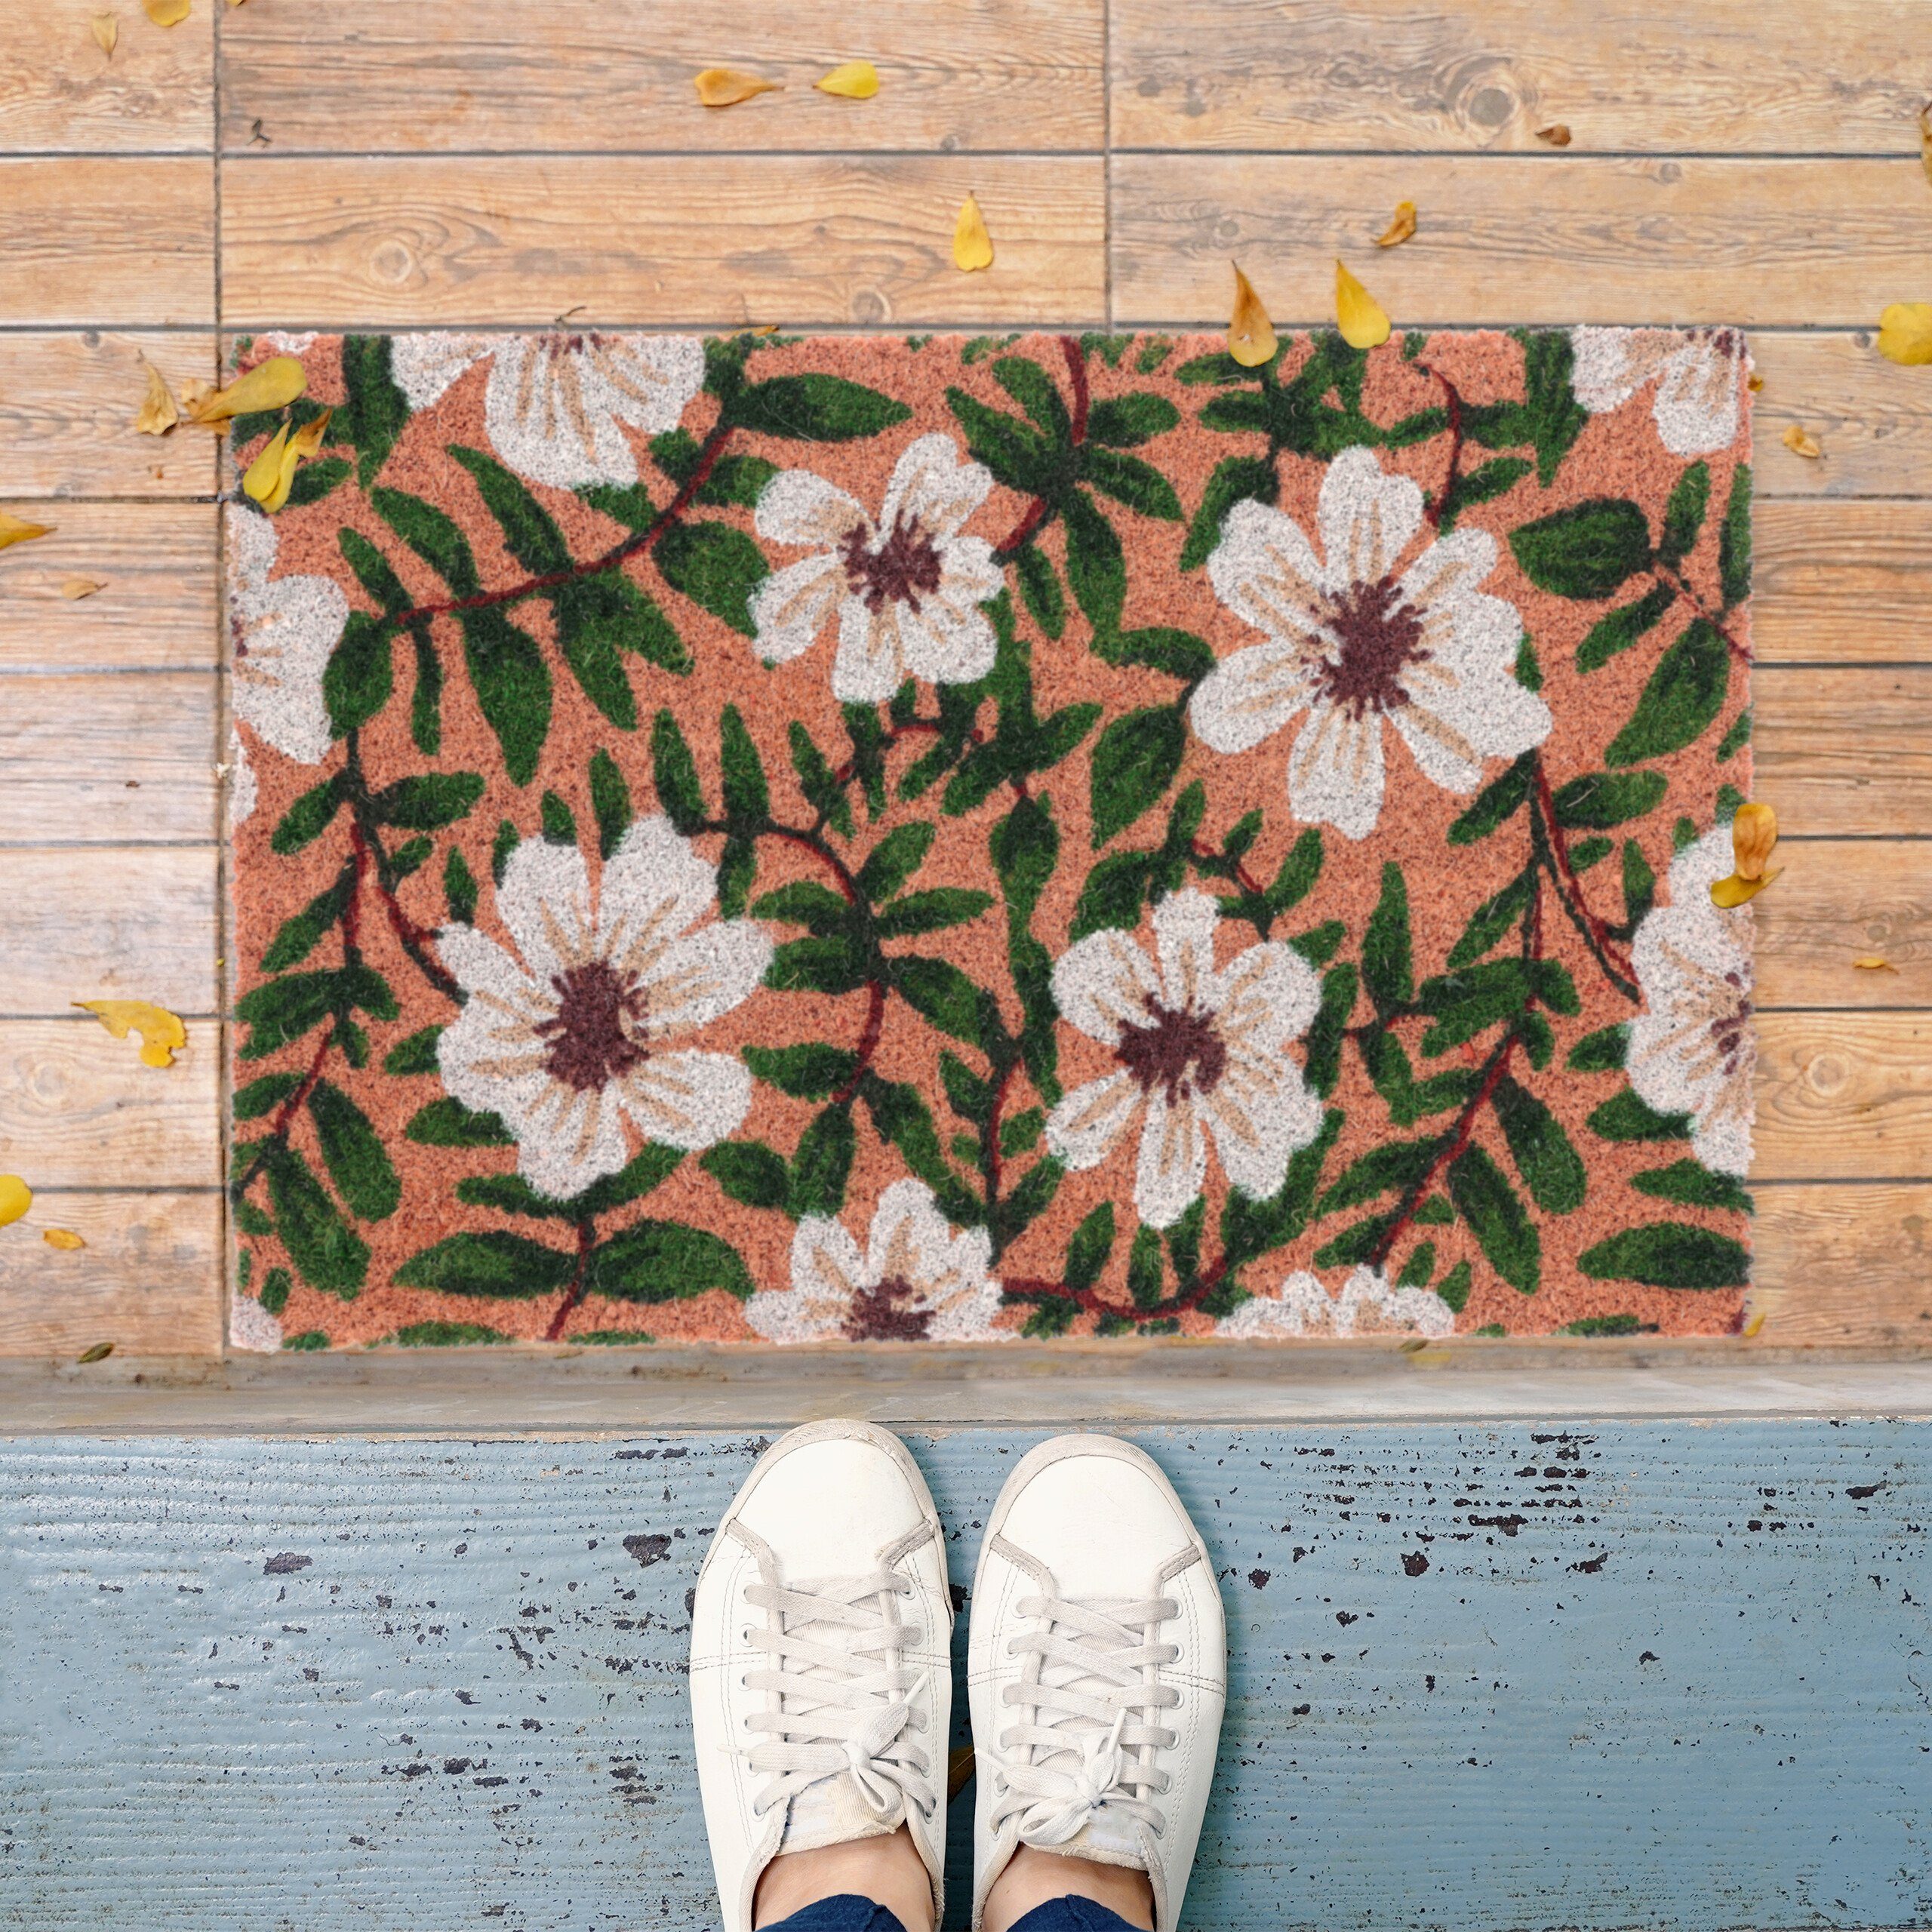 Schmetterling Blumen Küche Bodenmatte Hauseingang Fußmatte